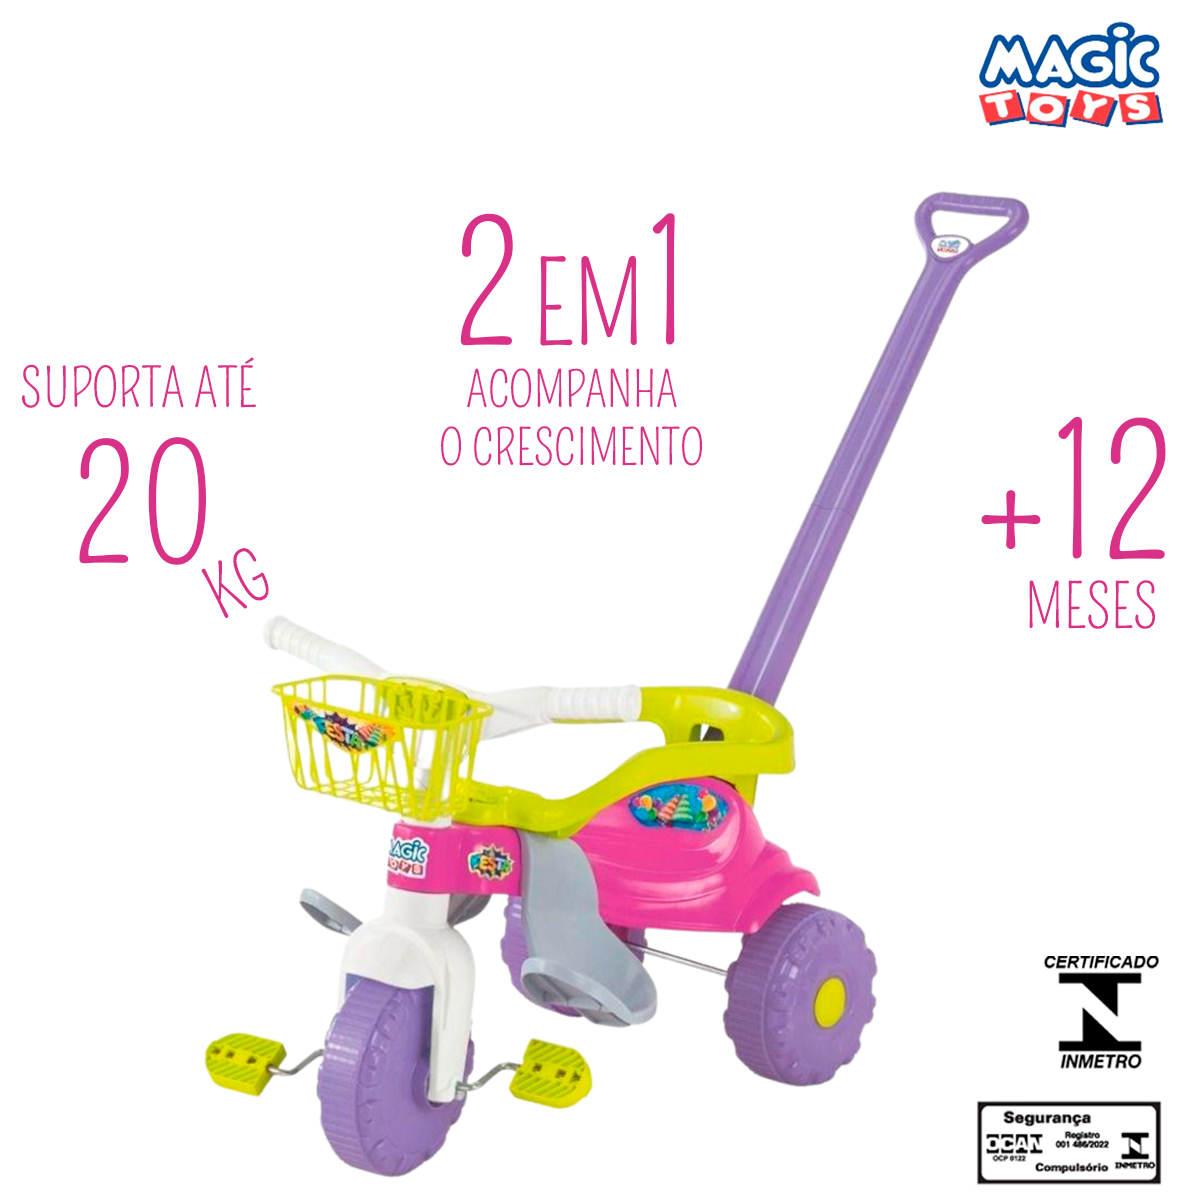 Triciclo Infantil Motoquinha Velotrol Tico-Tico Com Aro Protetor e Haste De Empurrar Removível Magic Toys